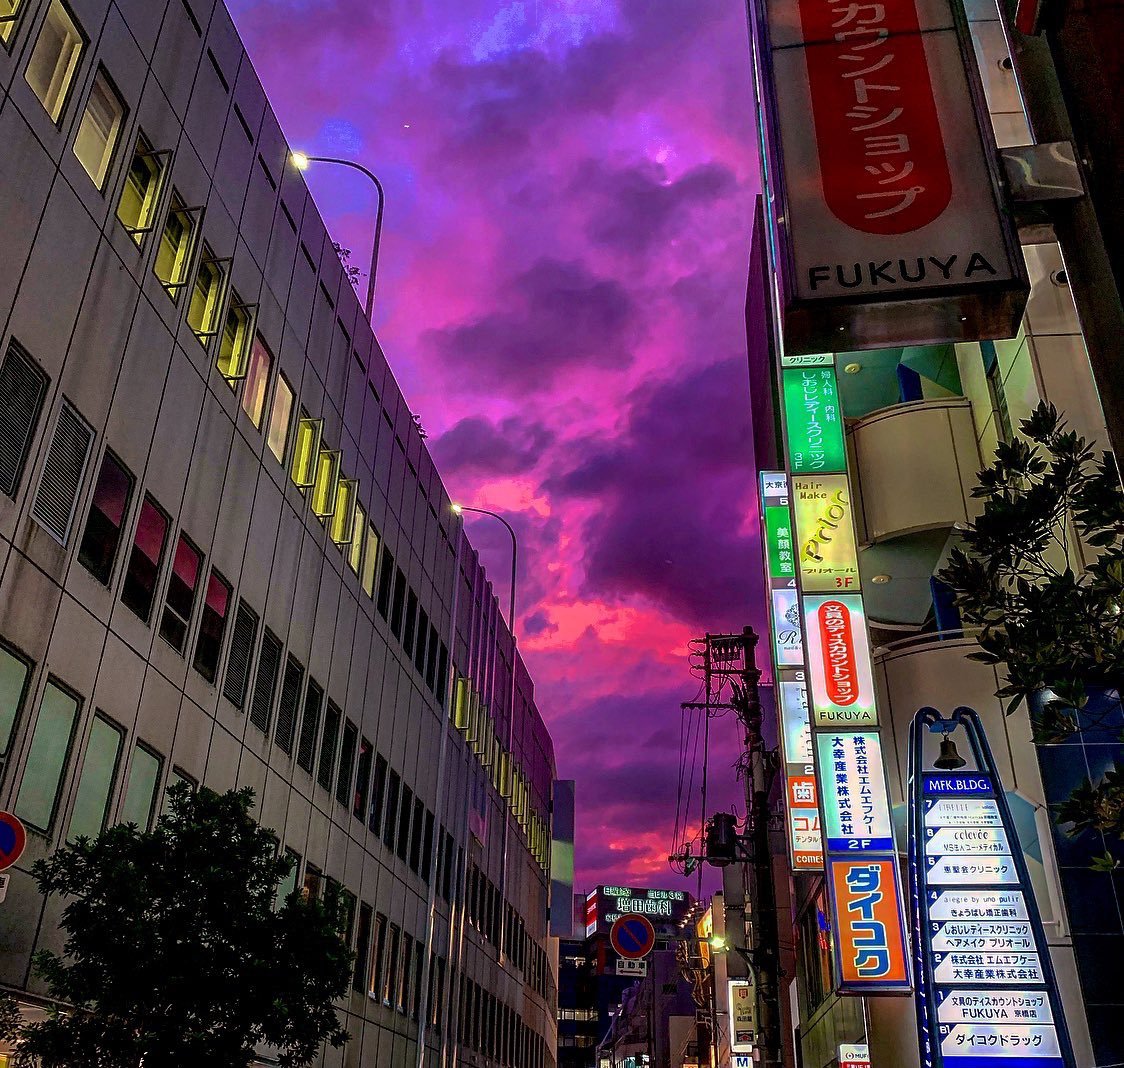 Mang lại cho bạn những cảm xúc tuyệt vời khi nhìn vào bầu trời Nhật Bản với những bức ảnh đẹp tuyệt vời. Hãy thưởng thức những tông màu tràn đầy sức sống của bầu trời Nhật Bản.